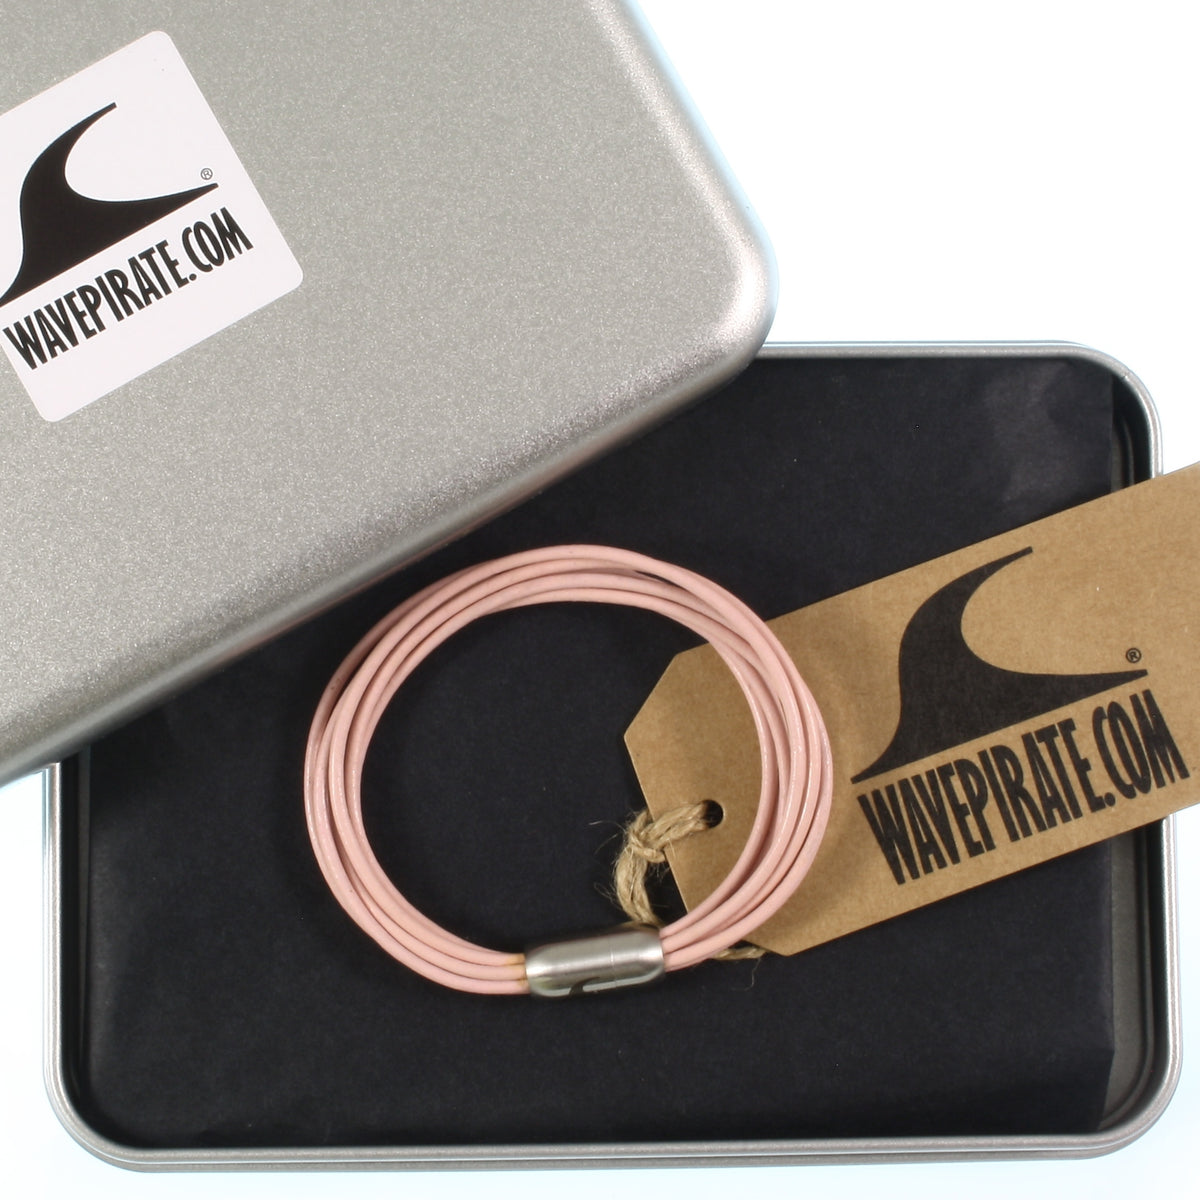 Damen-Leder-armband-fem-rosa-silber-Edelstahlverschluss-geschenkverpackung-wavepirate-shop-r